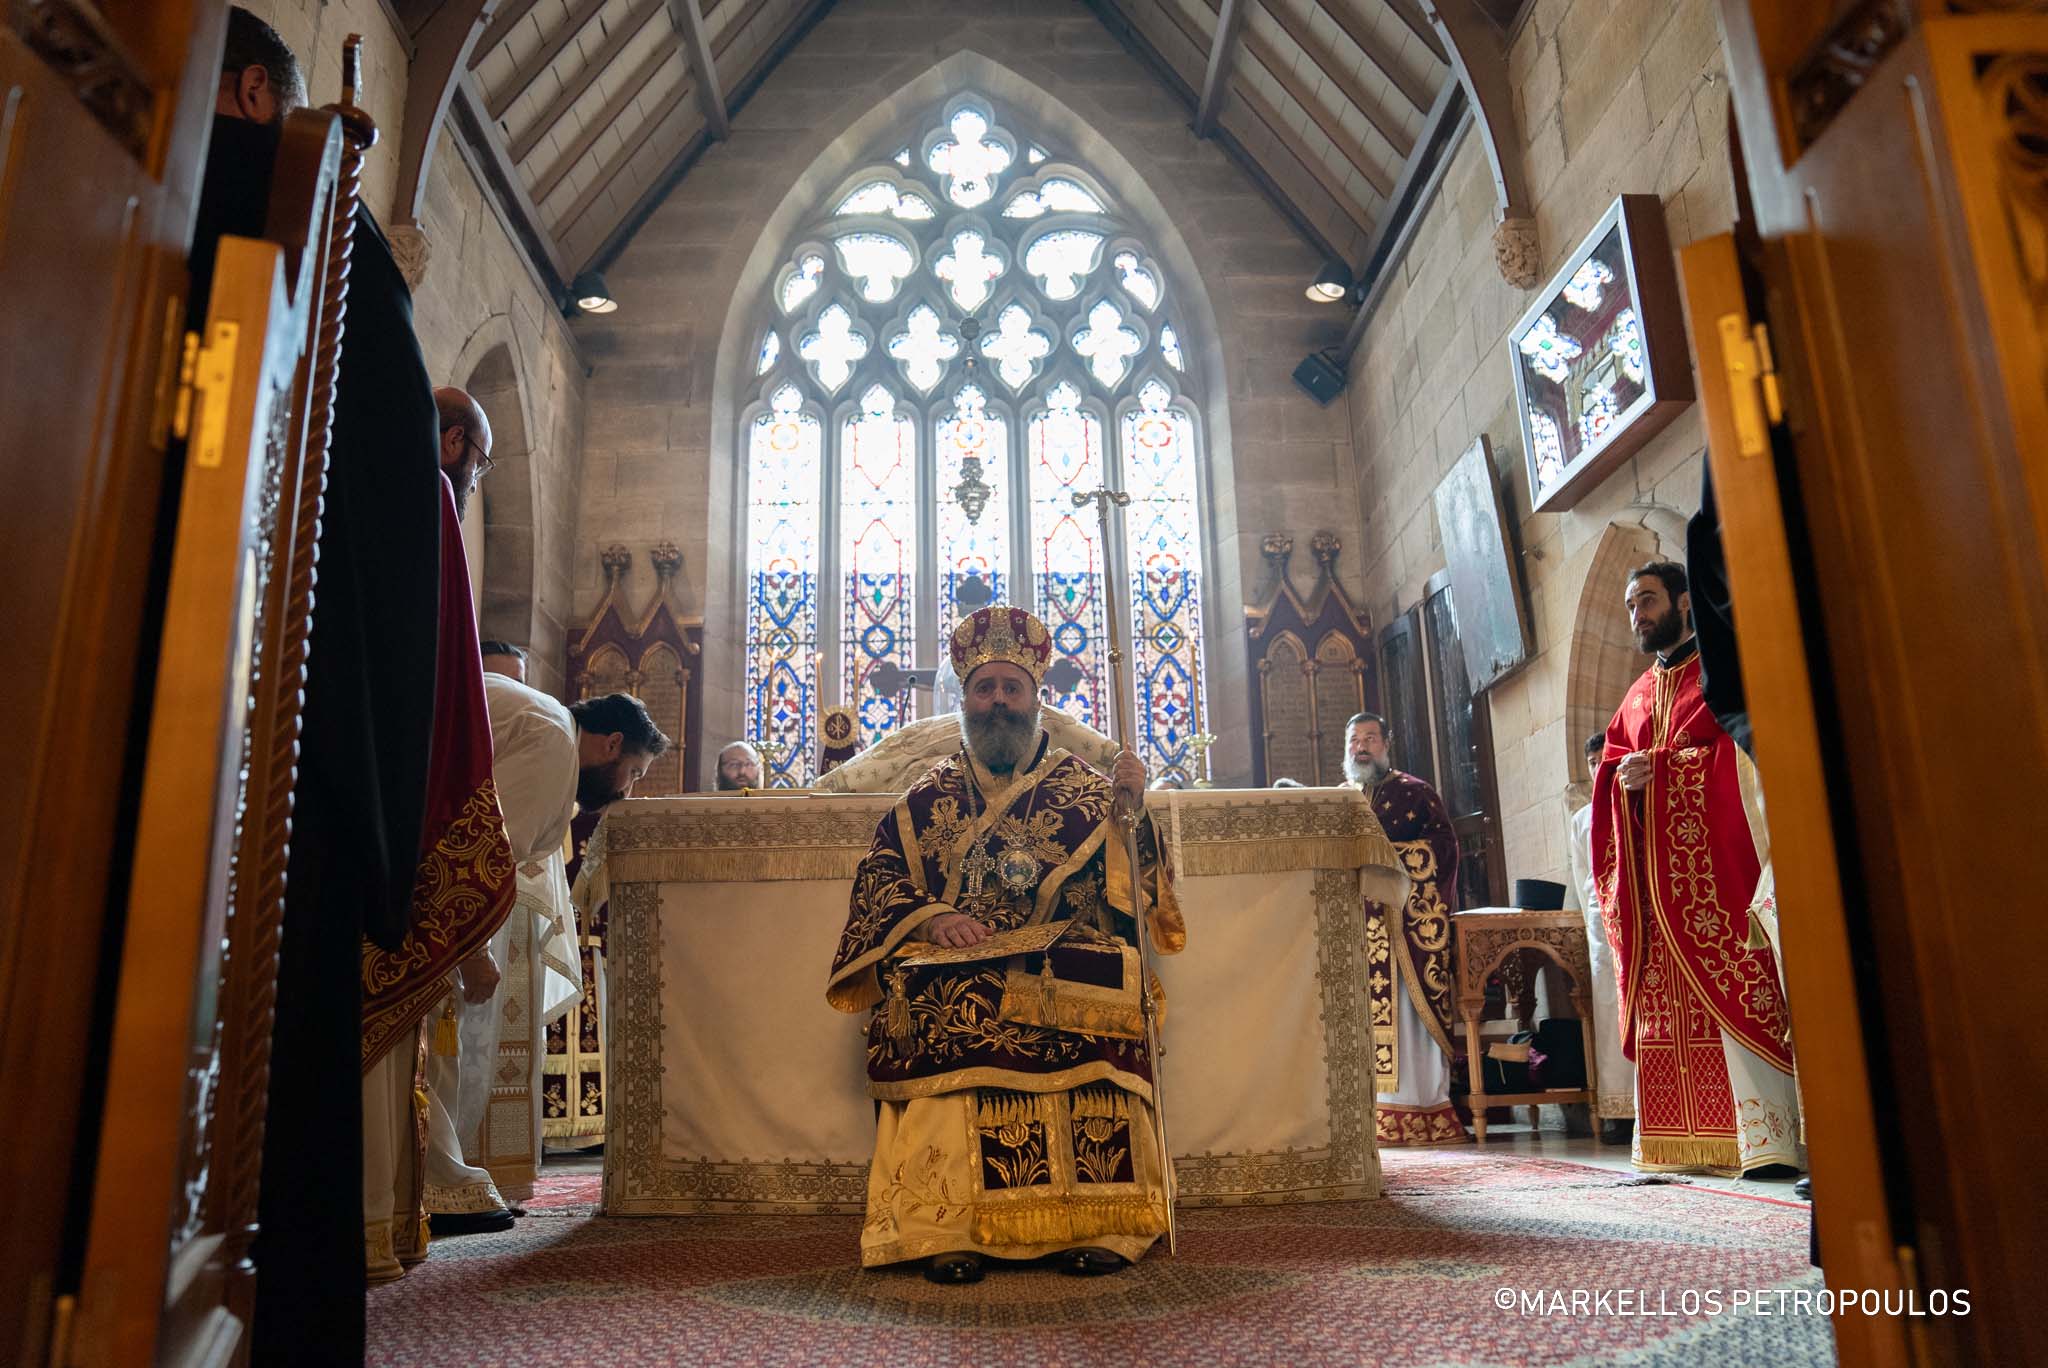 Χειροτονίες Πρεσβυτέρου και Διακόνου από τον Αρχιεπίσκοπο Αυστραλίας στο Σύδνεϋ